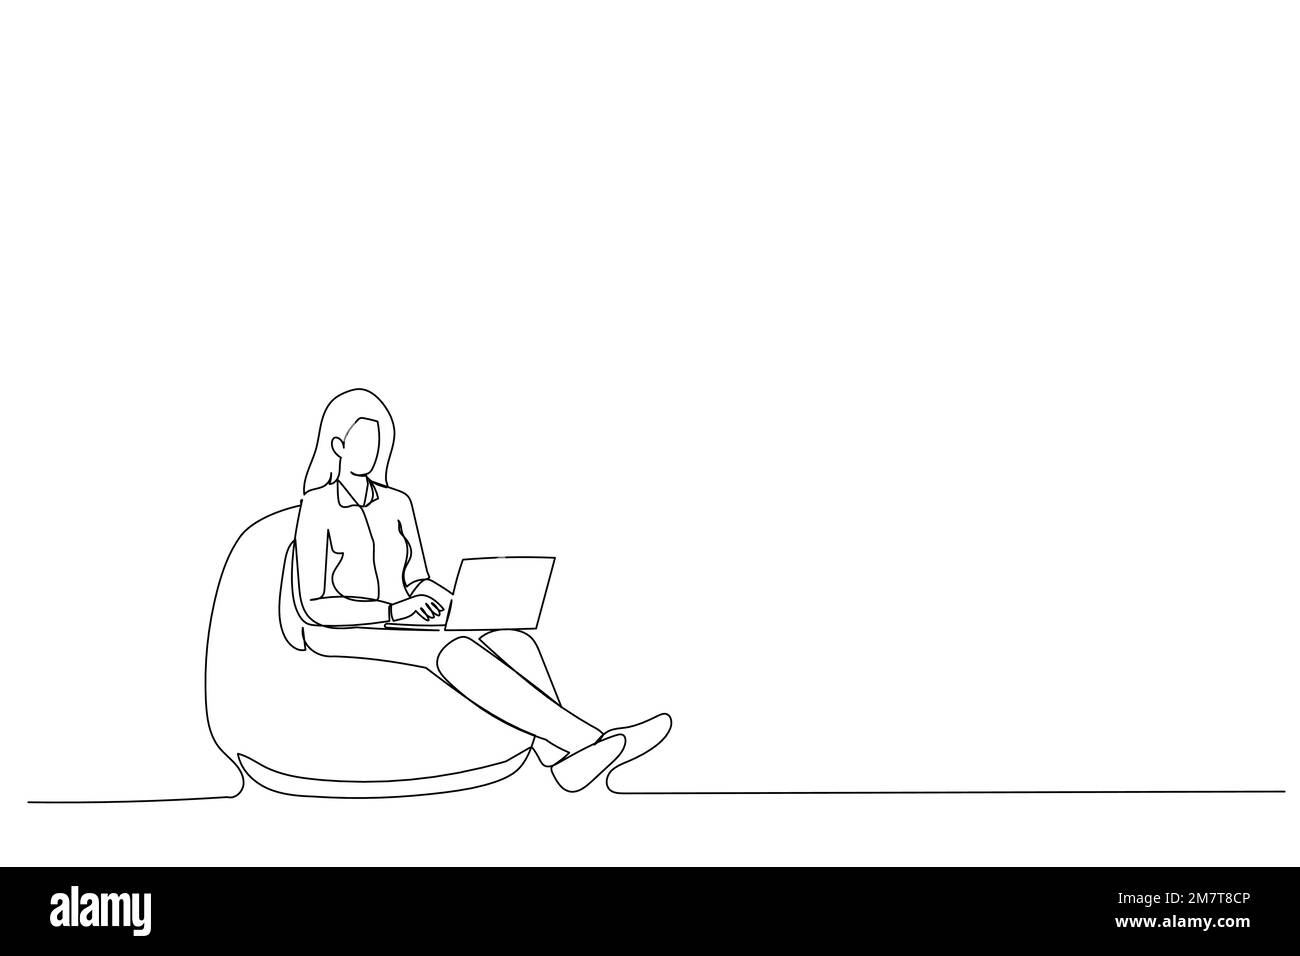 Zeichnung eines fokussierten CEO-Mitarbeiters, der auf dem Sitzplatz sitzt, verwenden Sie die Suchinformationen für Laptops, einzeilige Grafiken Stock Vektor